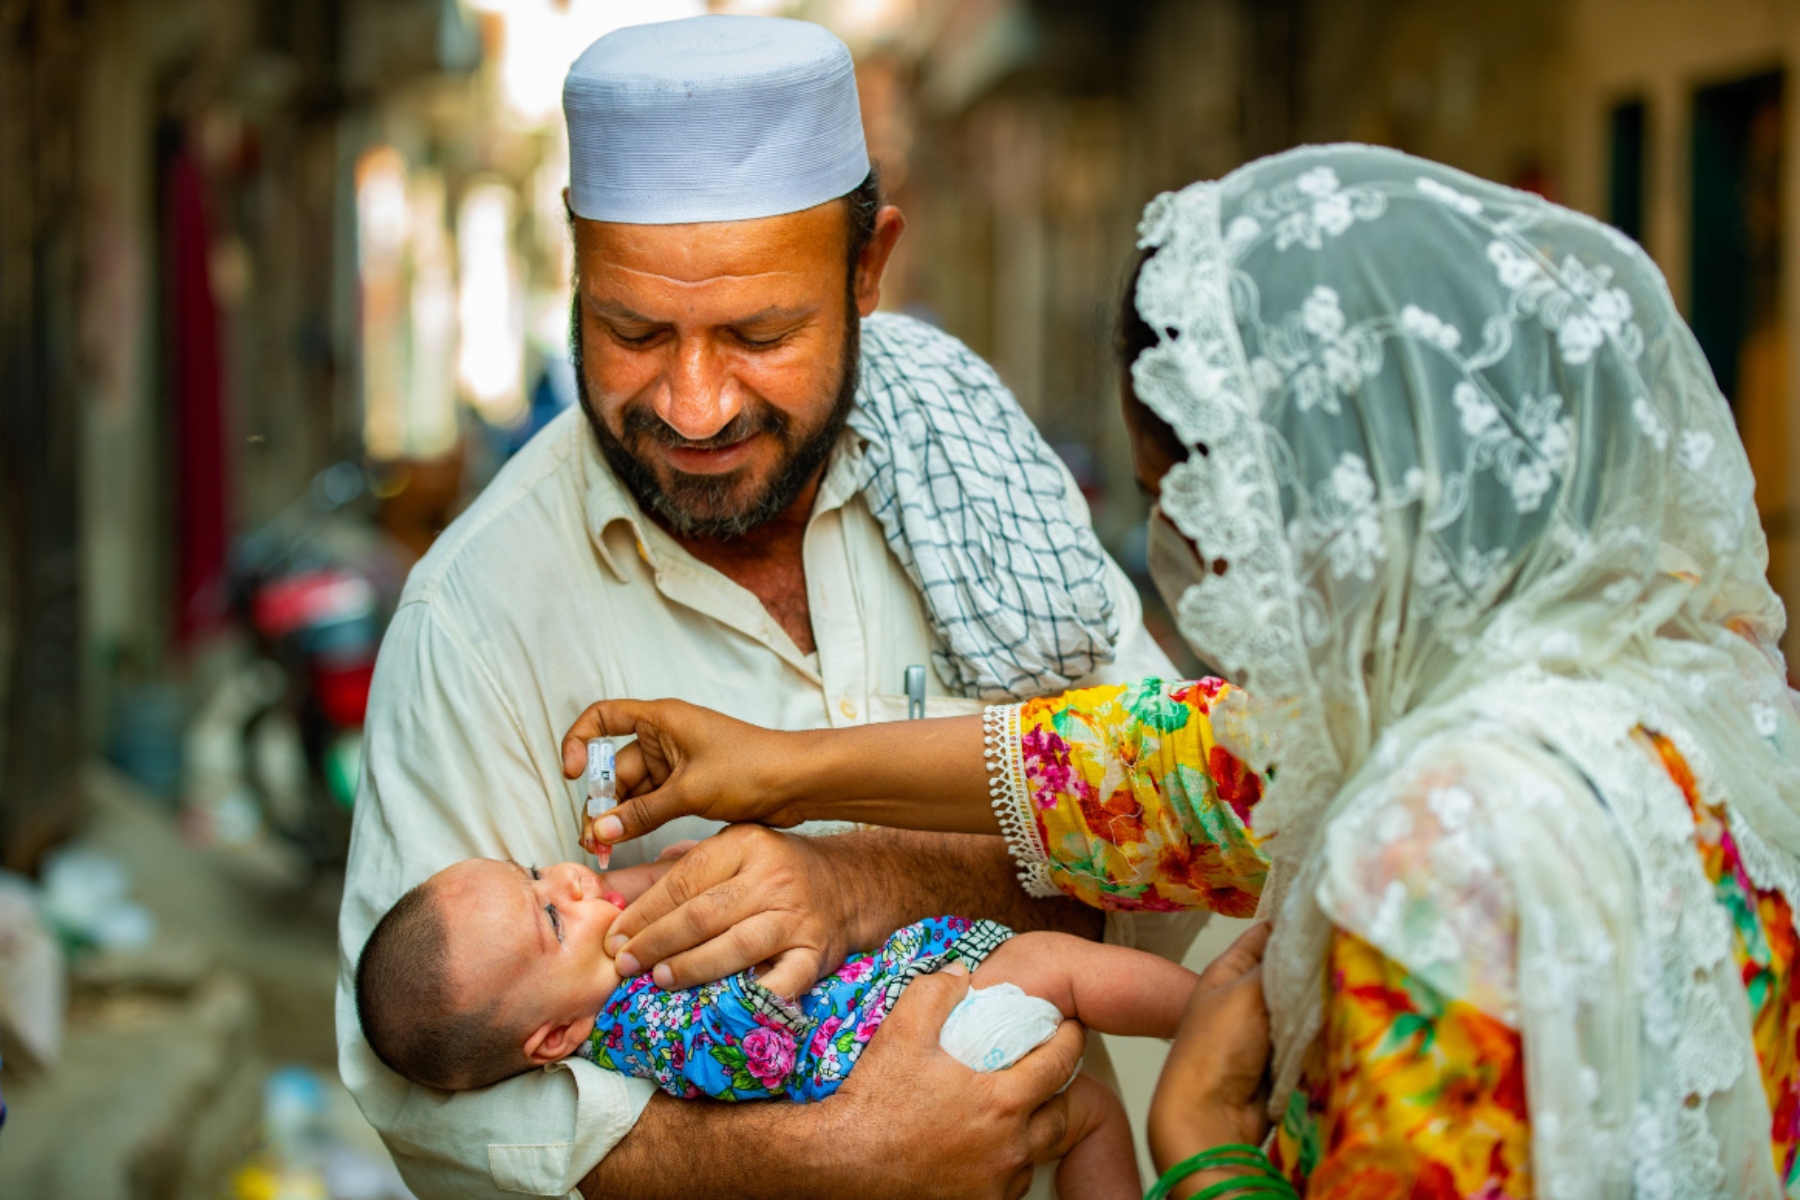 Πολιομυελίτιδα Πακιστάν: Θα μπορέσει ποτέ να εξαλείψει την πολιομυελίτιδα;